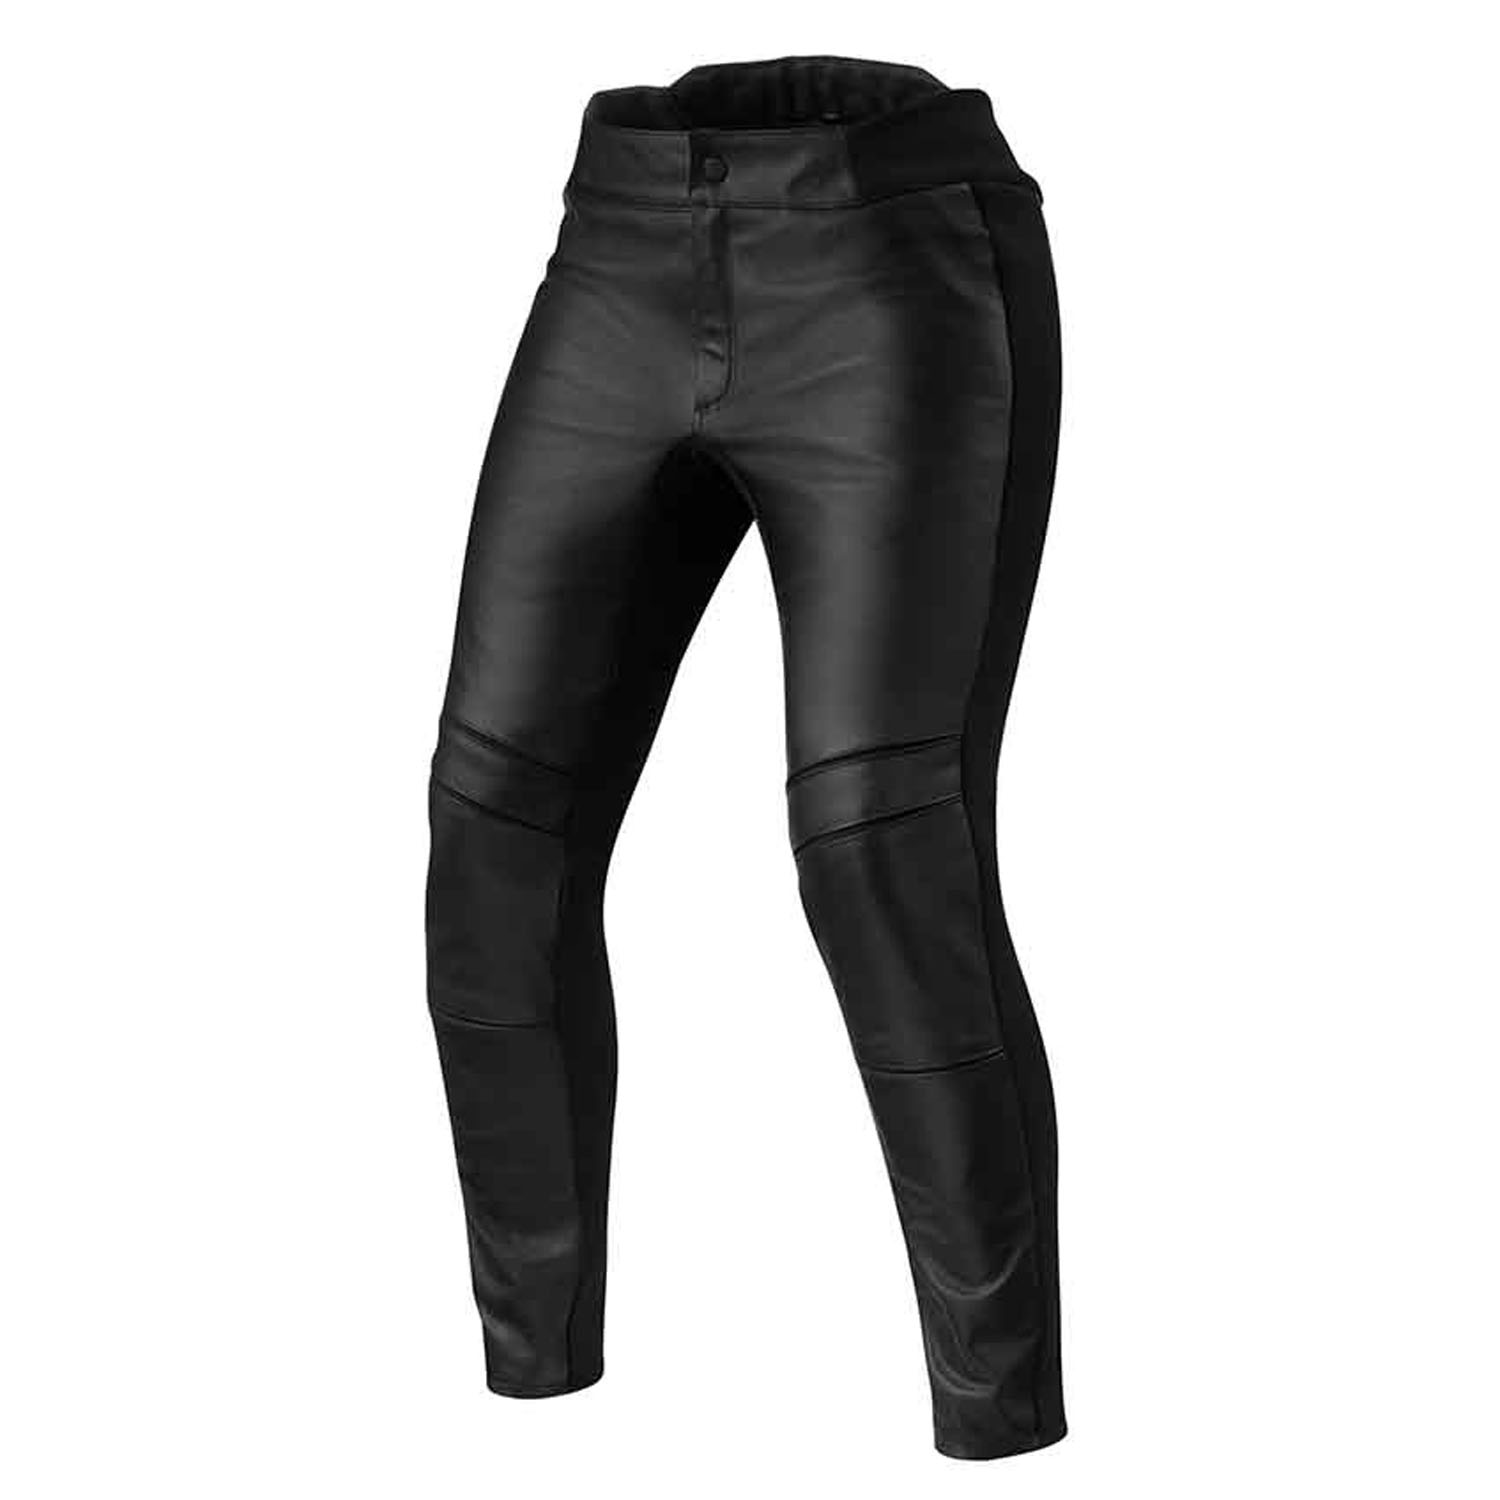 Image of REV'IT! Maci Ladies Black Standard Motorcycle Pants Taille 44